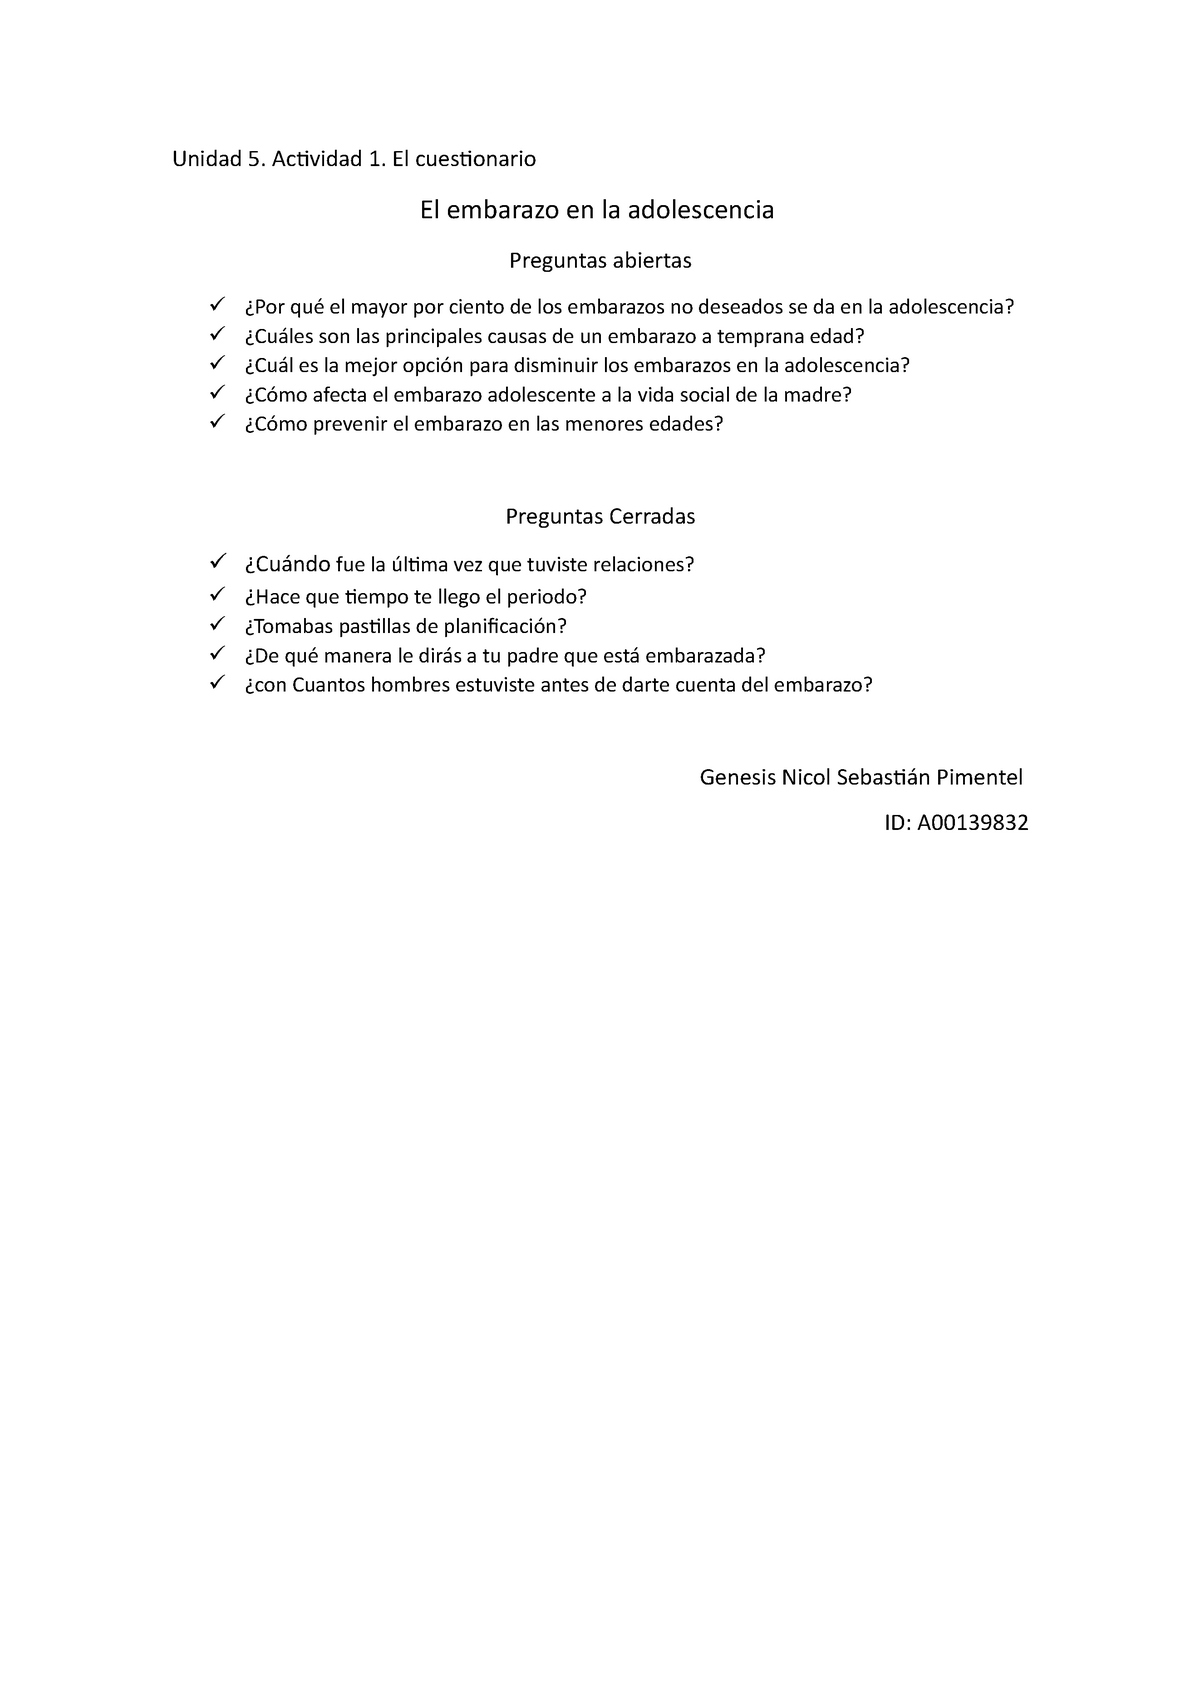 Libro Metodología Ed1 - APUNTOS DE ESTUDIANTES - 1  qwertyuiopasdfghjklzxcvbnmq - Studocu